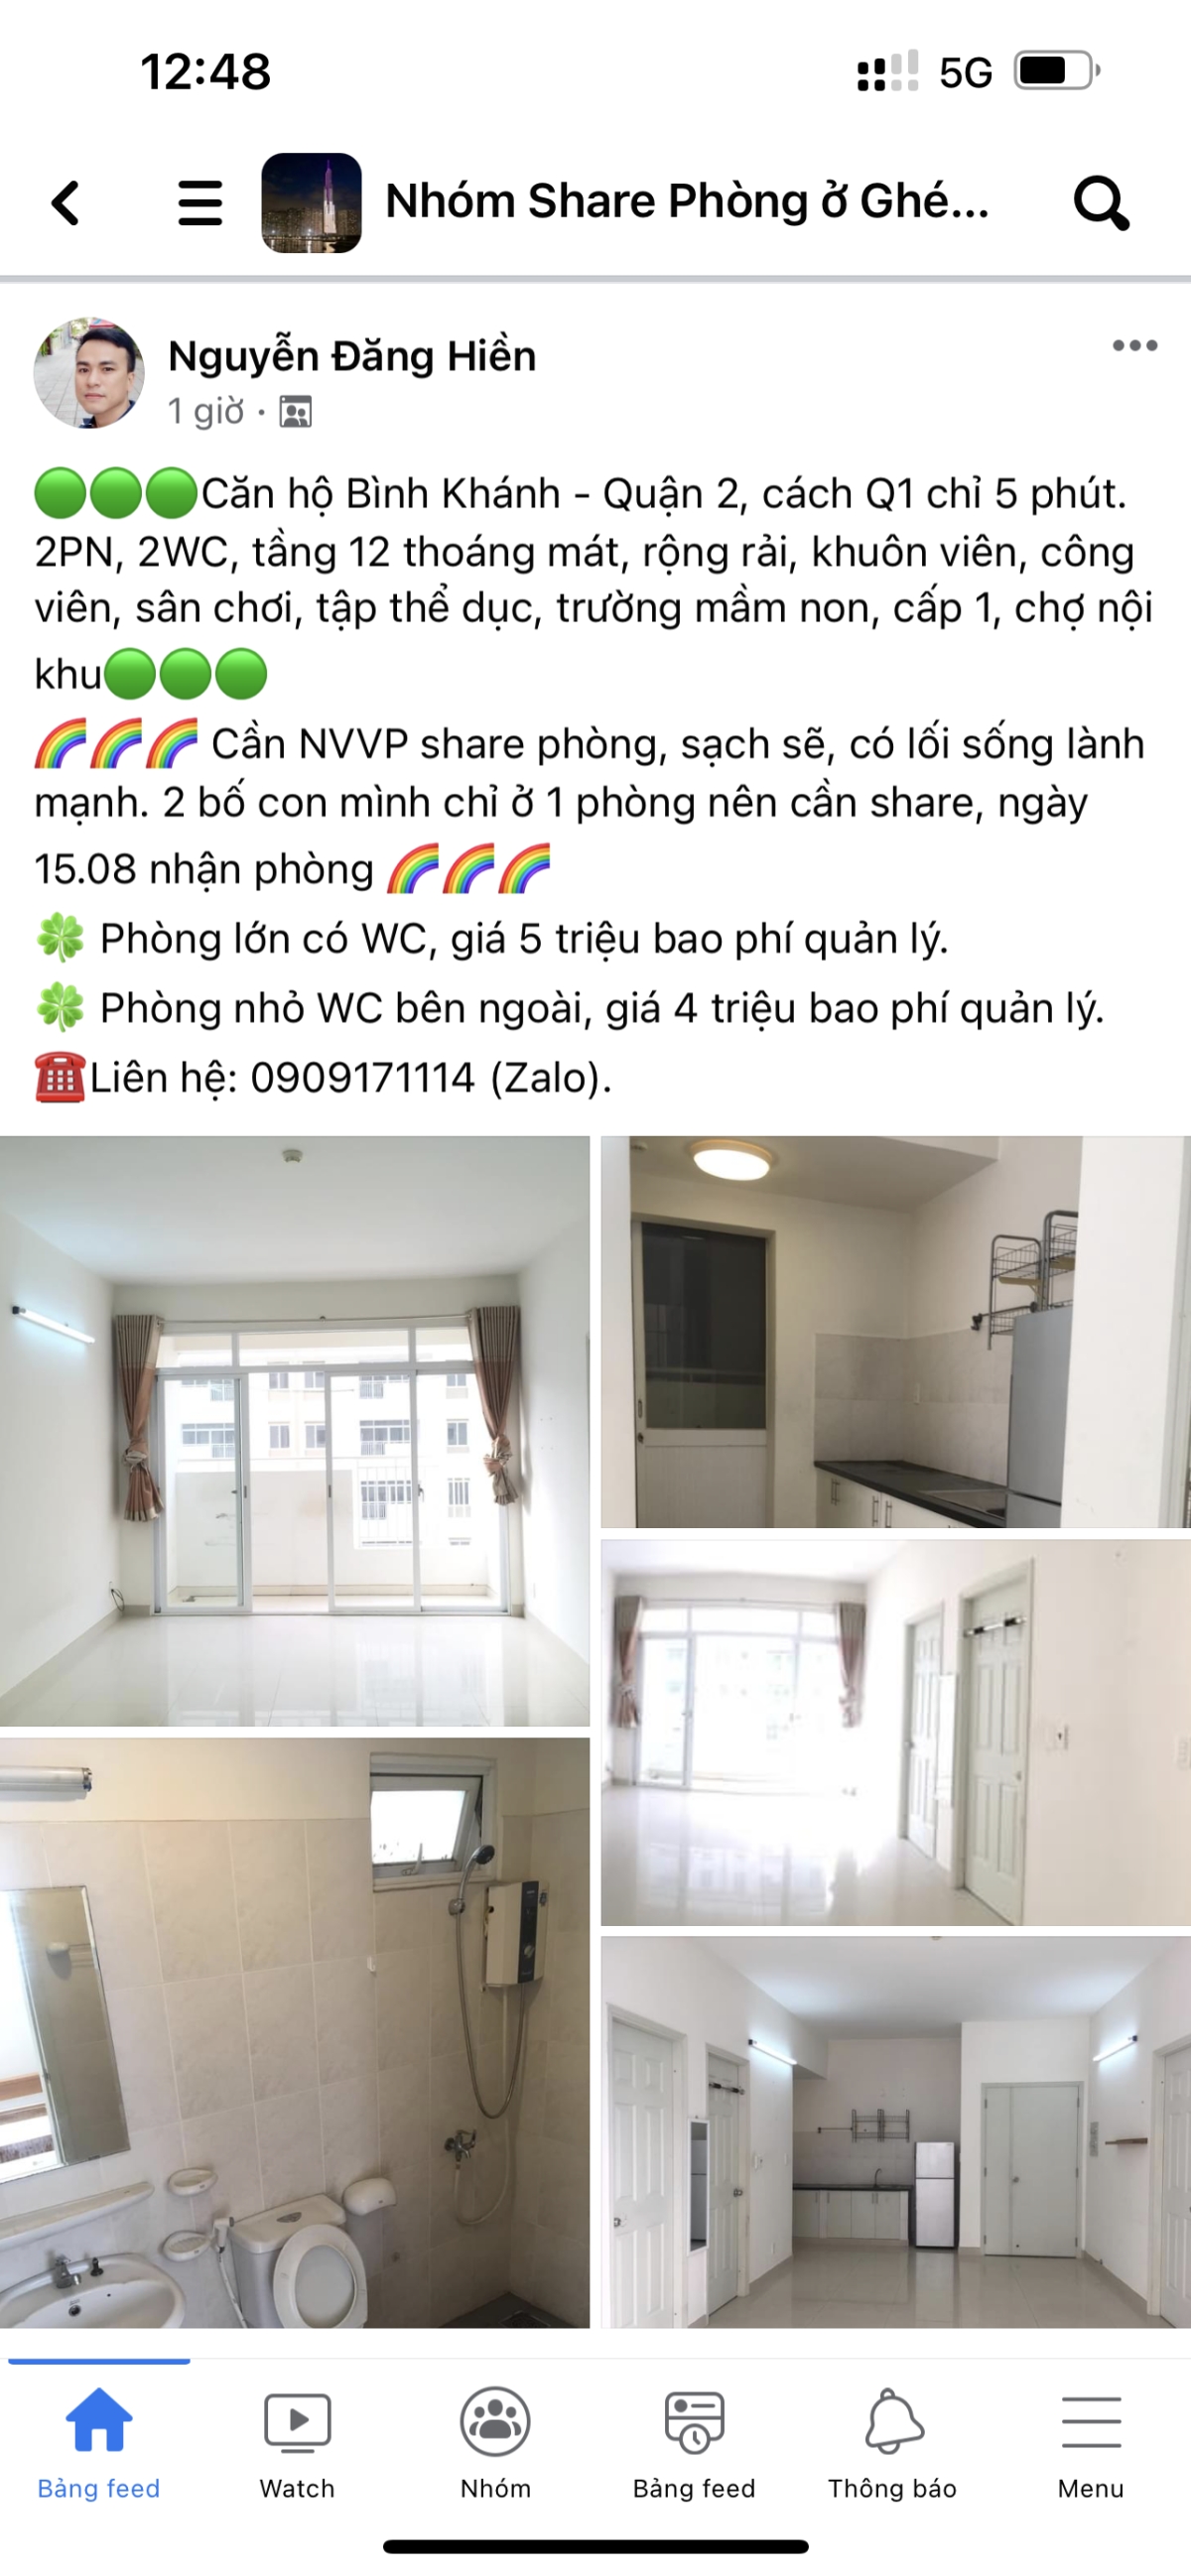 Tìm người share chung cư Bình Khánh 2PN, 2WC, giá 4 triệu.